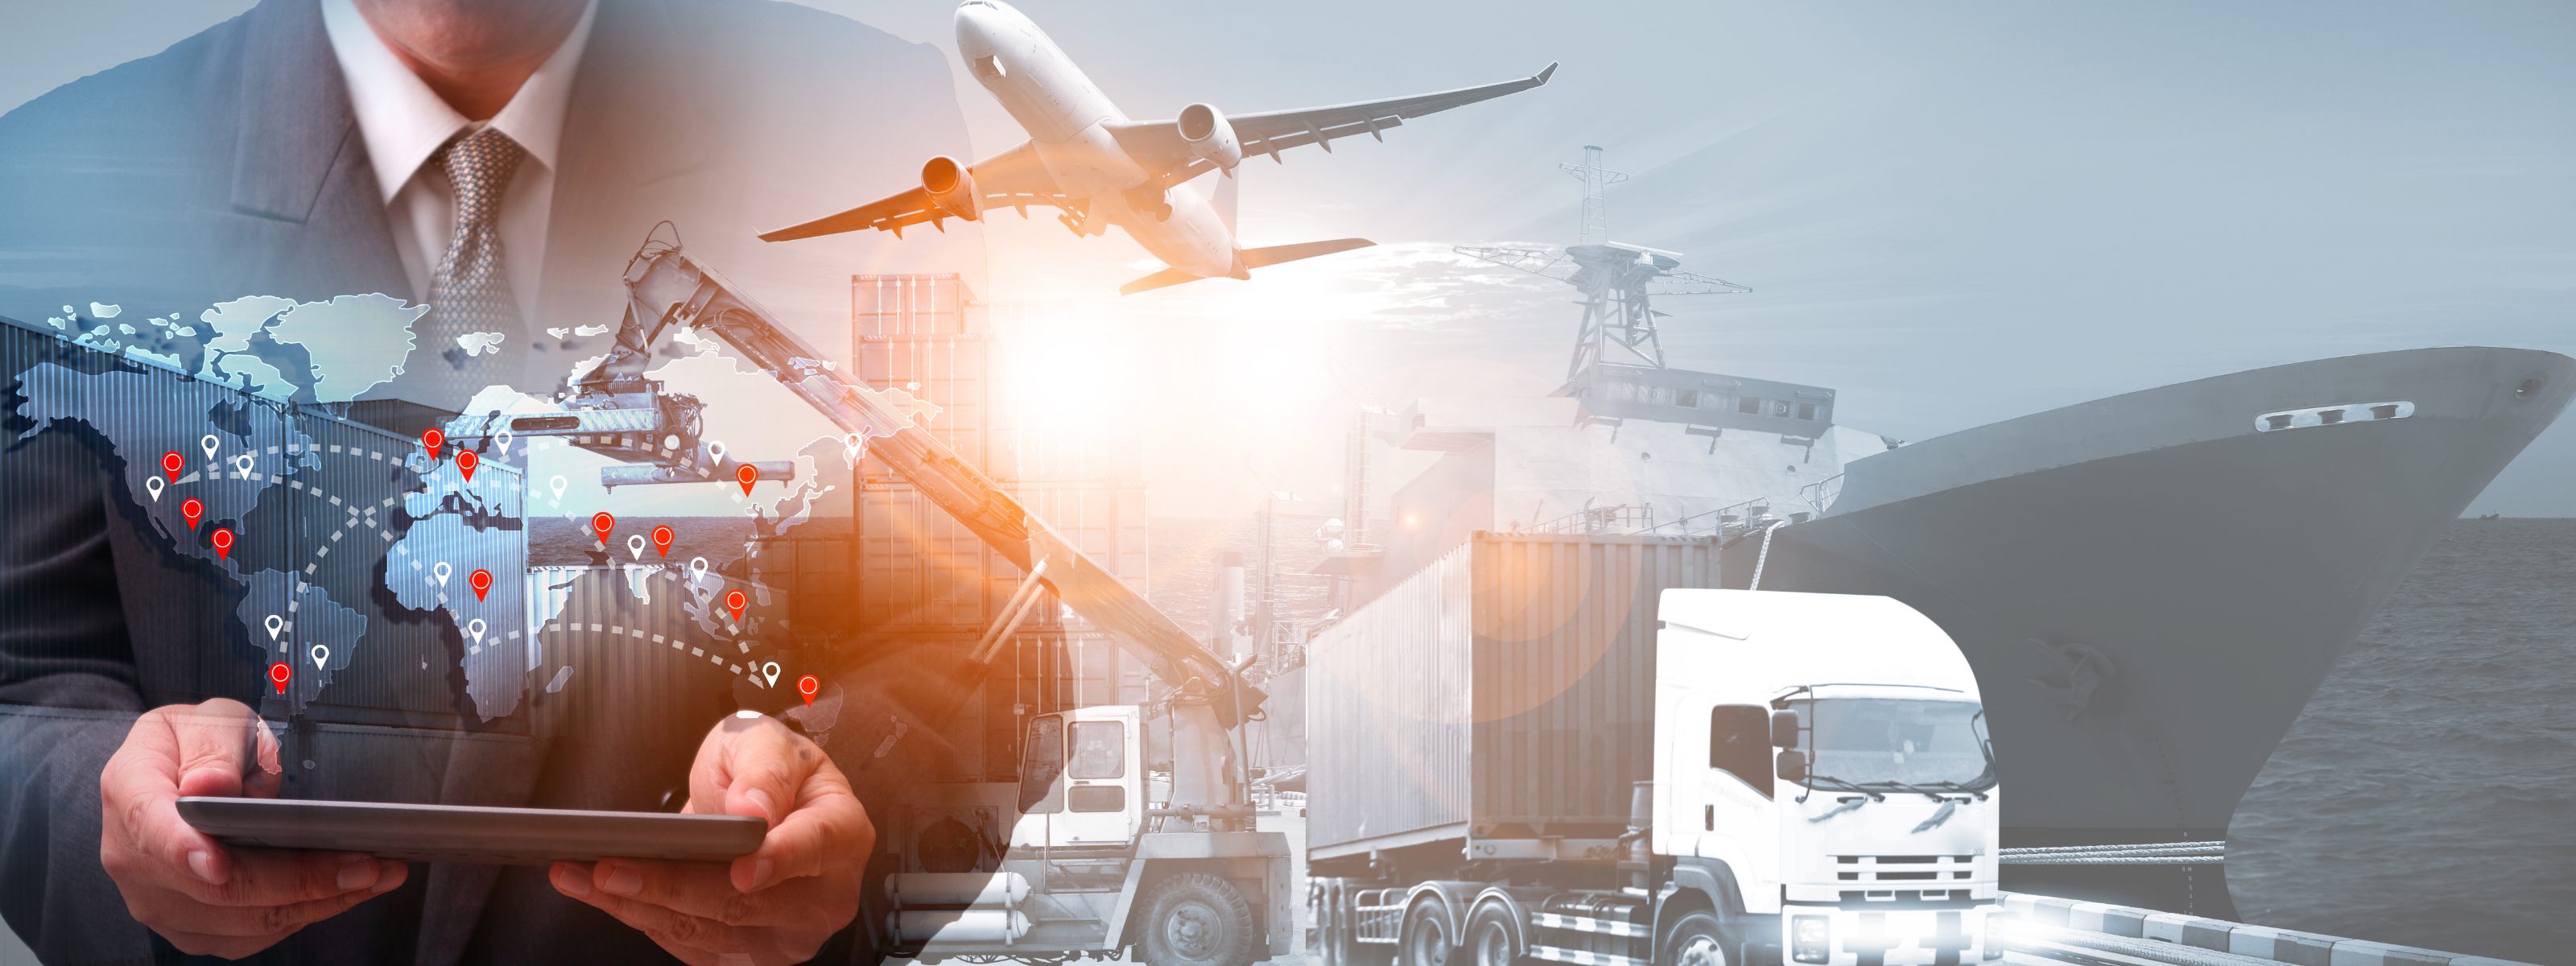 Excelência no ramo de transporte para importação e exportação marítima, aérea e rodoviária